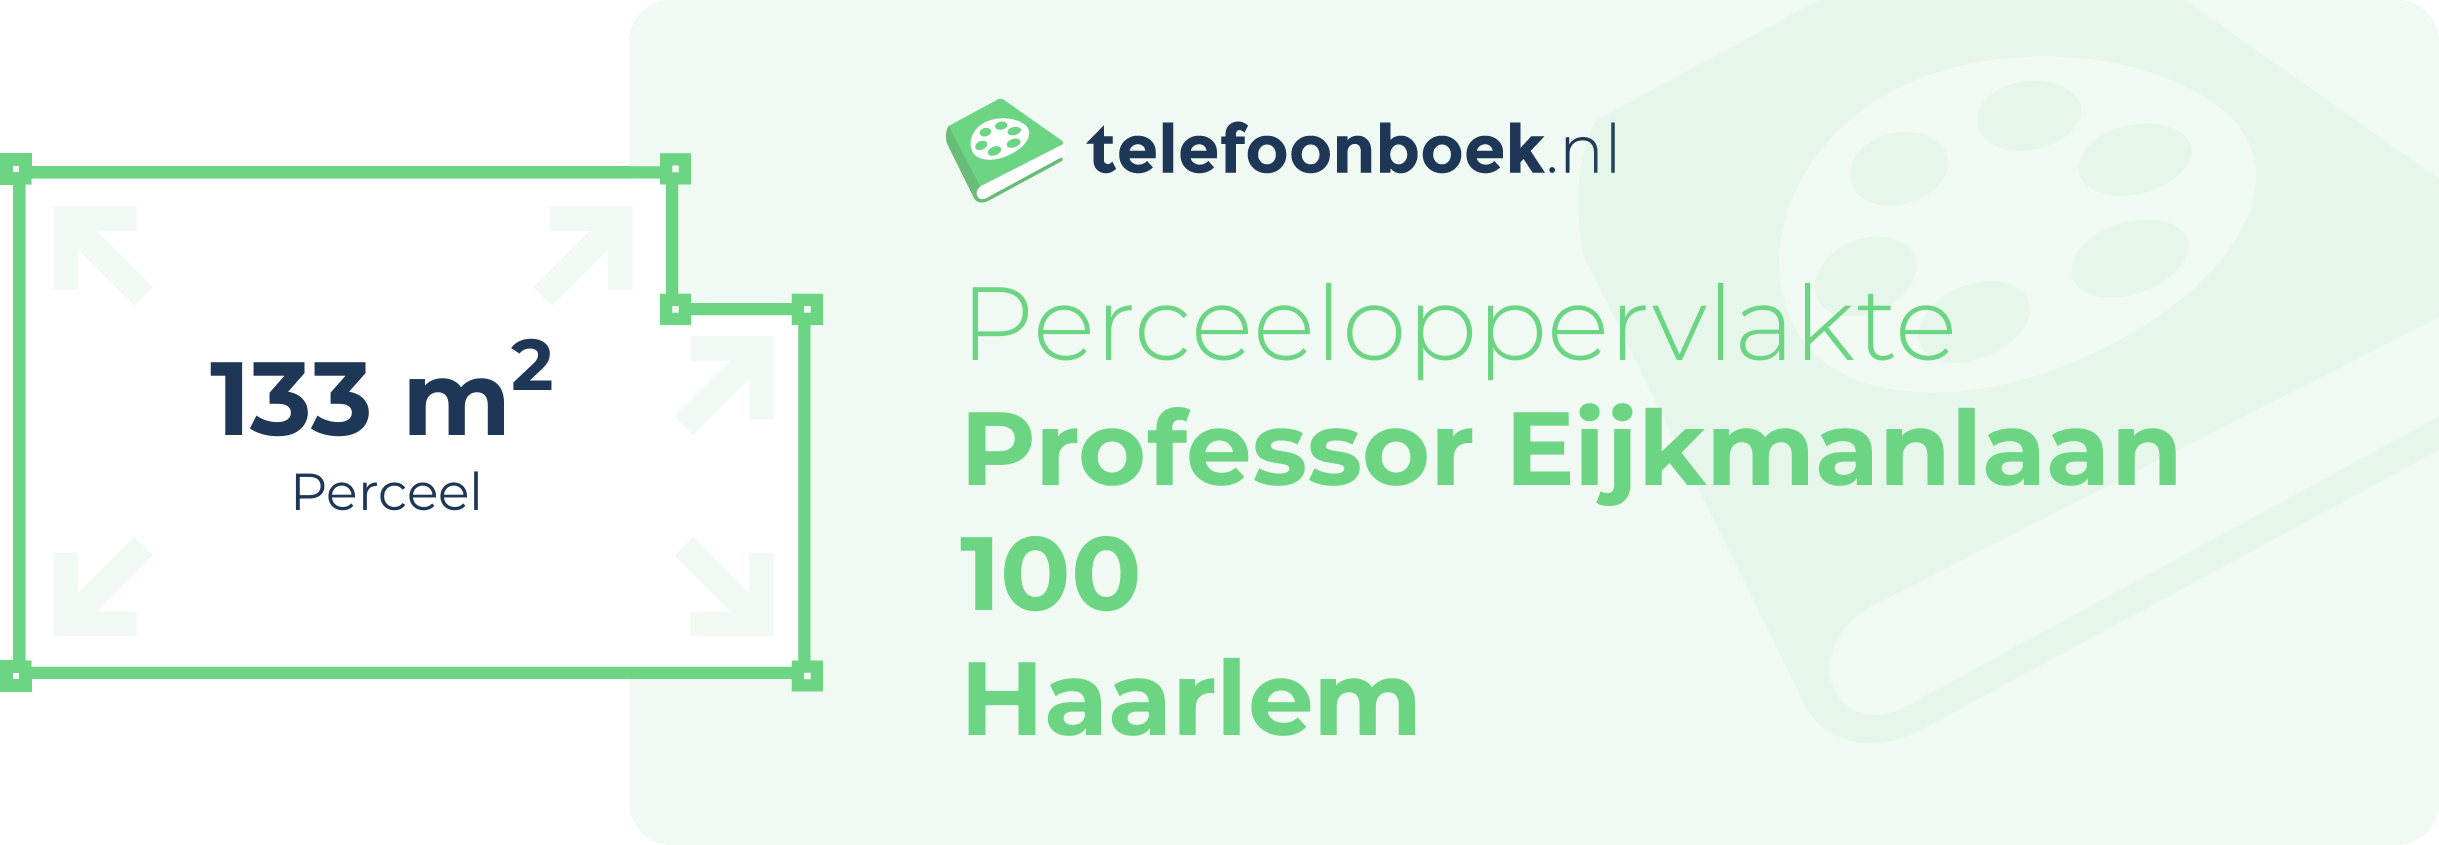 Perceeloppervlakte Professor Eijkmanlaan 100 Haarlem